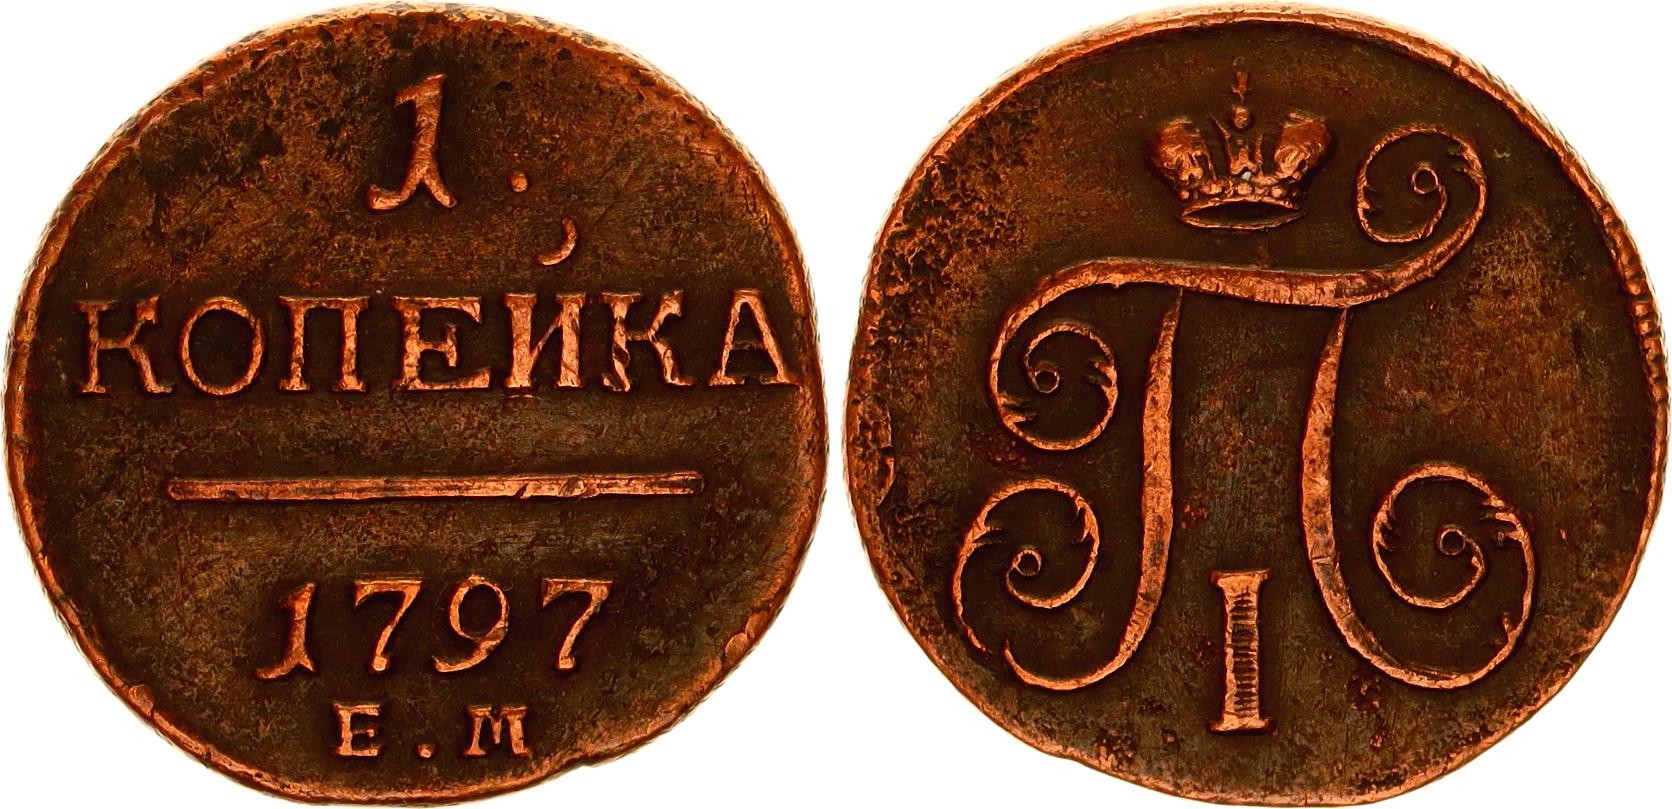 Старинная монета с буквой е и короной 1797 г. 1 Байоччb Италия 1797. Espania 1kopek.